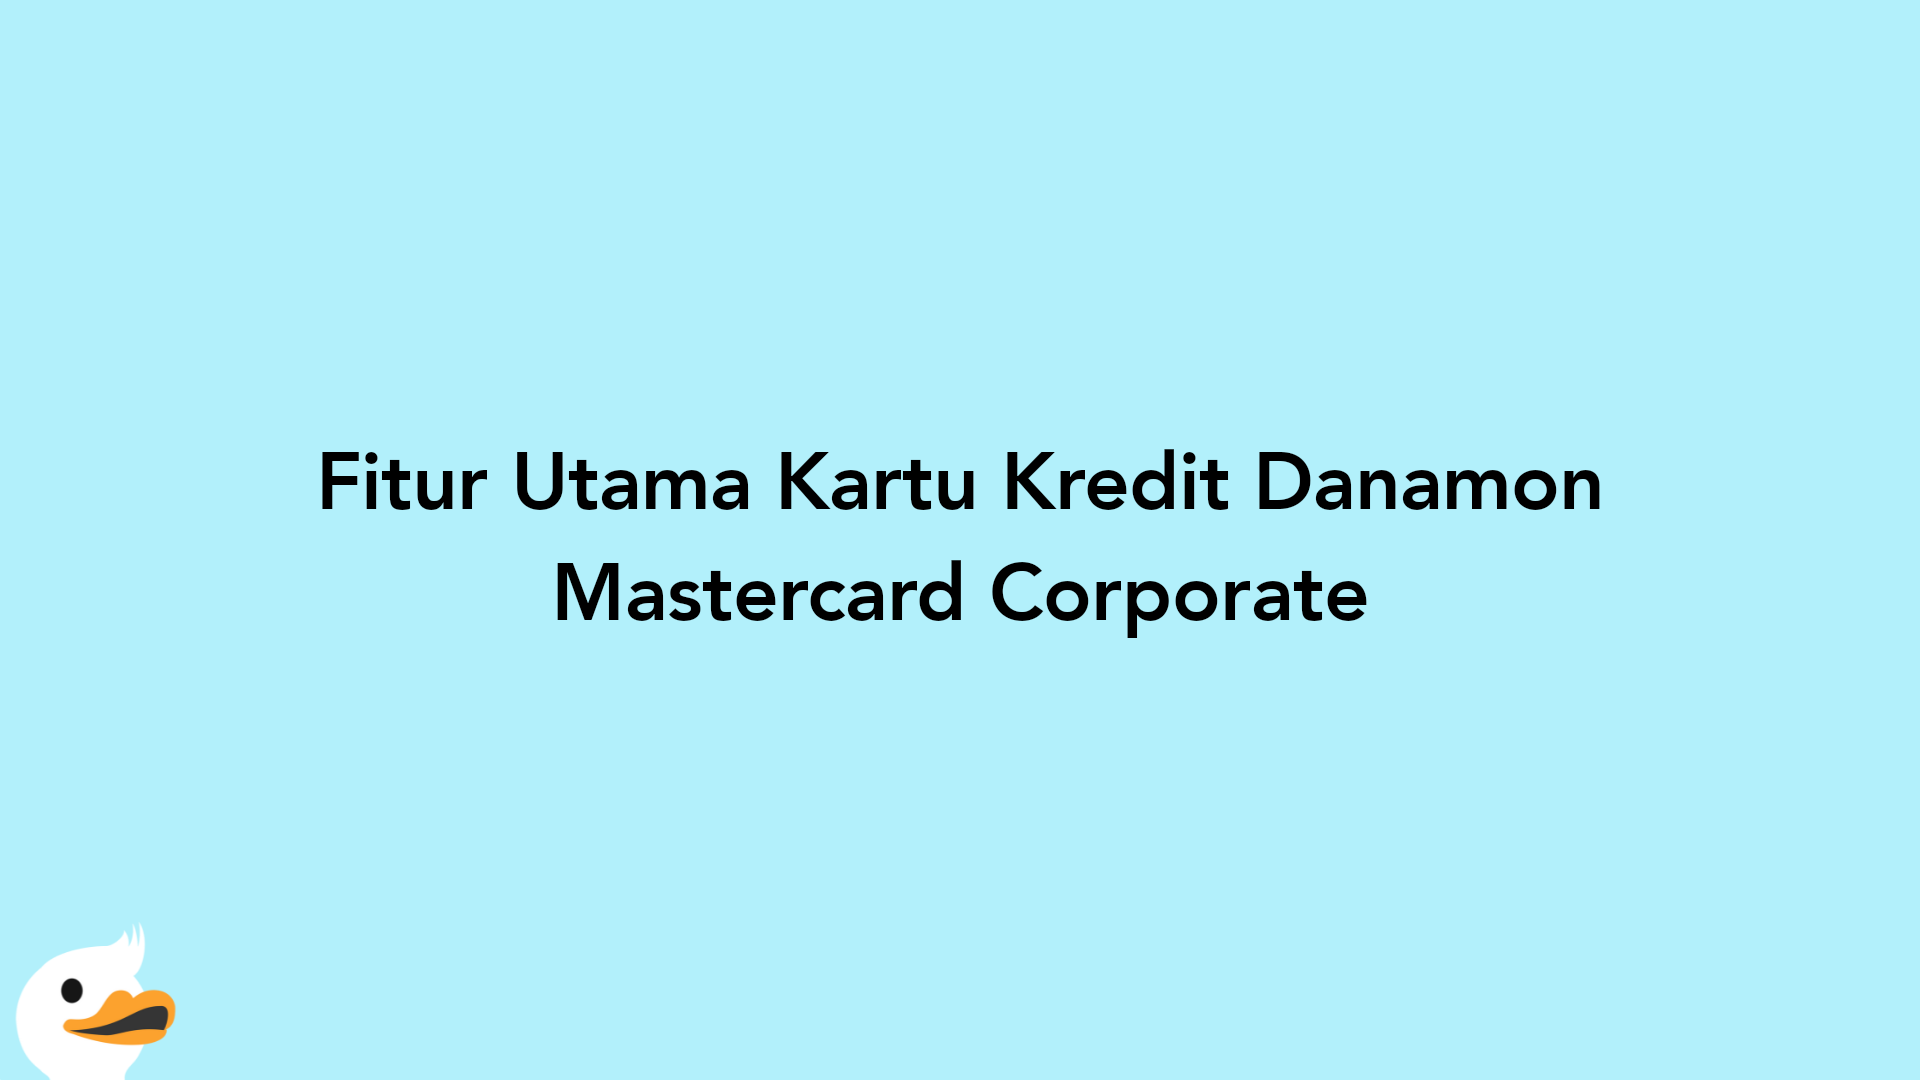 Fitur Utama Kartu Kredit Danamon Mastercard Corporate